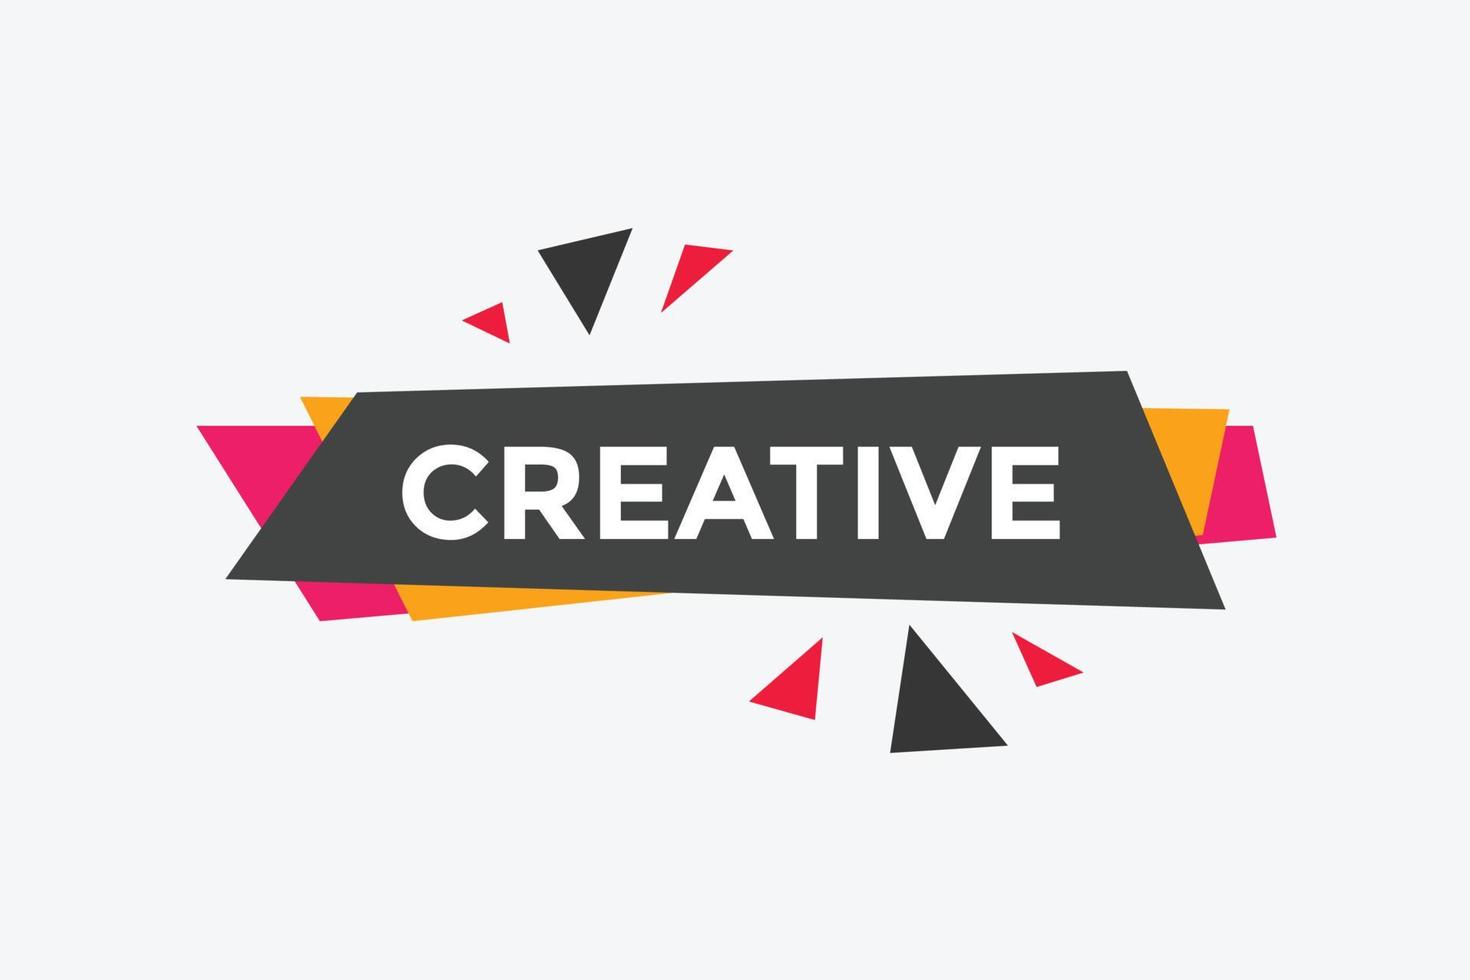 botón de texto creativo. burbuja de habla creativa. banner web colorido creativo. ilustración vectorial vector